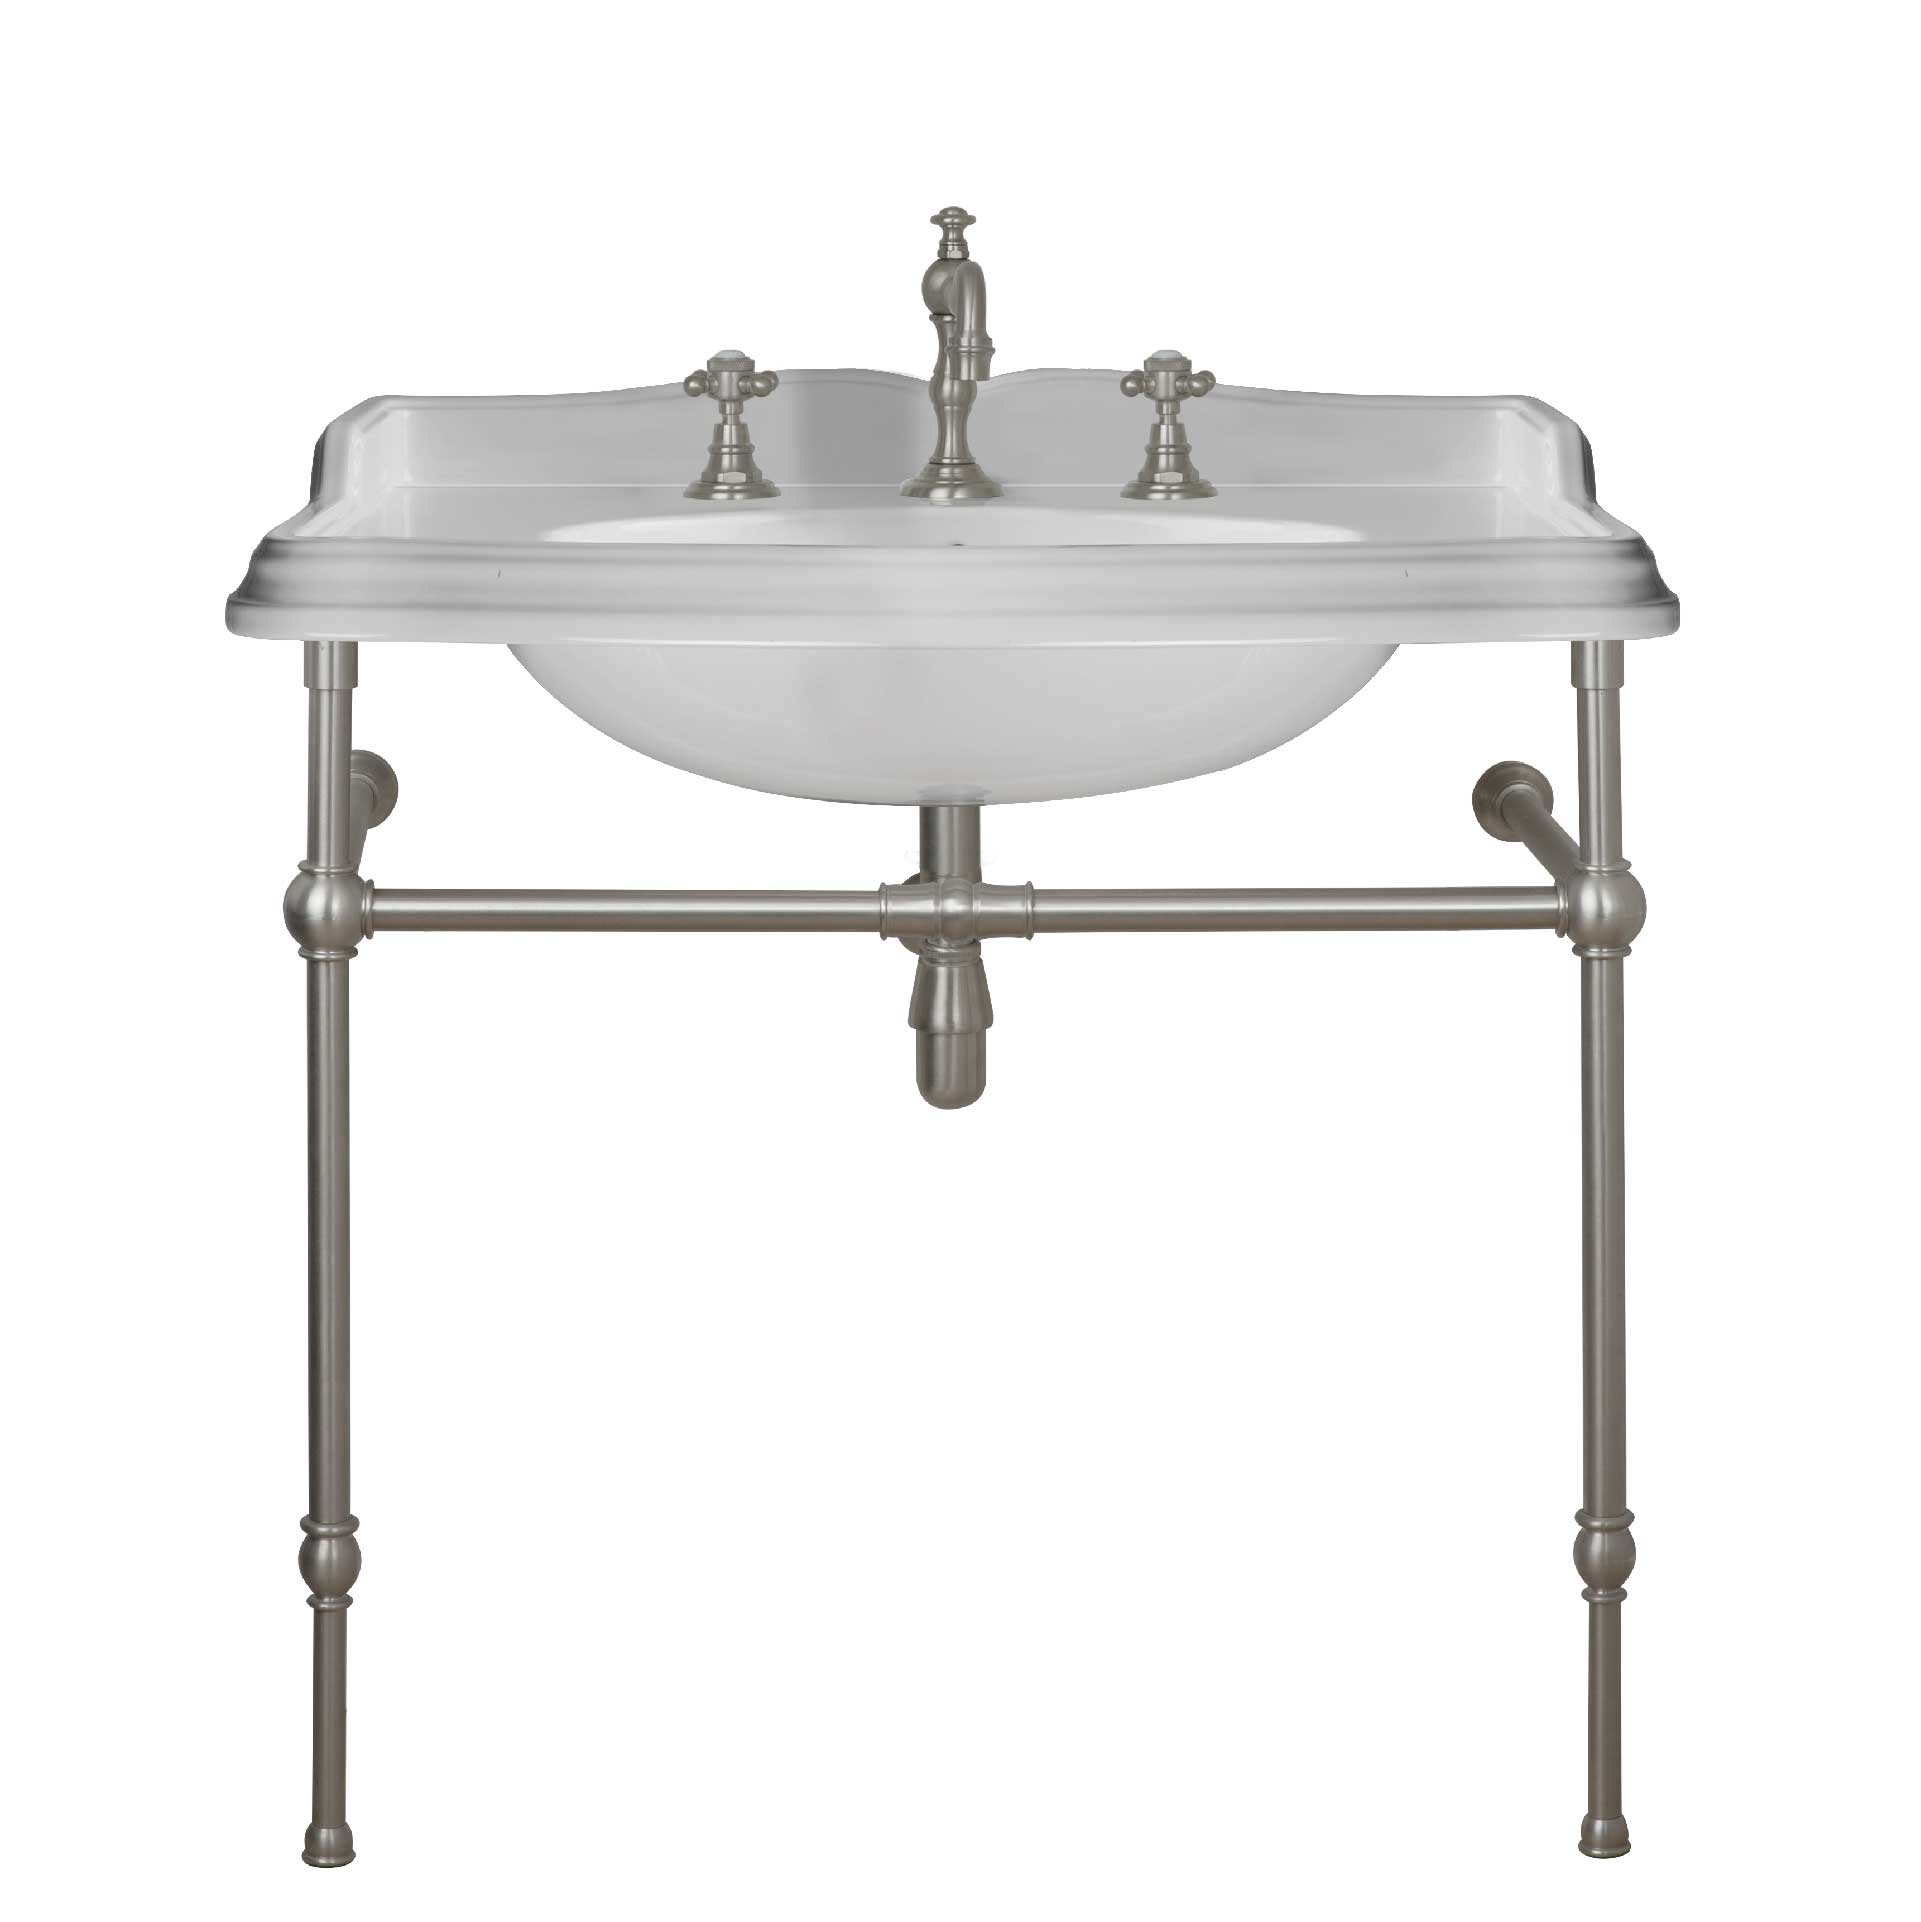 MS03-90-pietement-laiton Victorian washbasin on brass washstand, L. 90cm